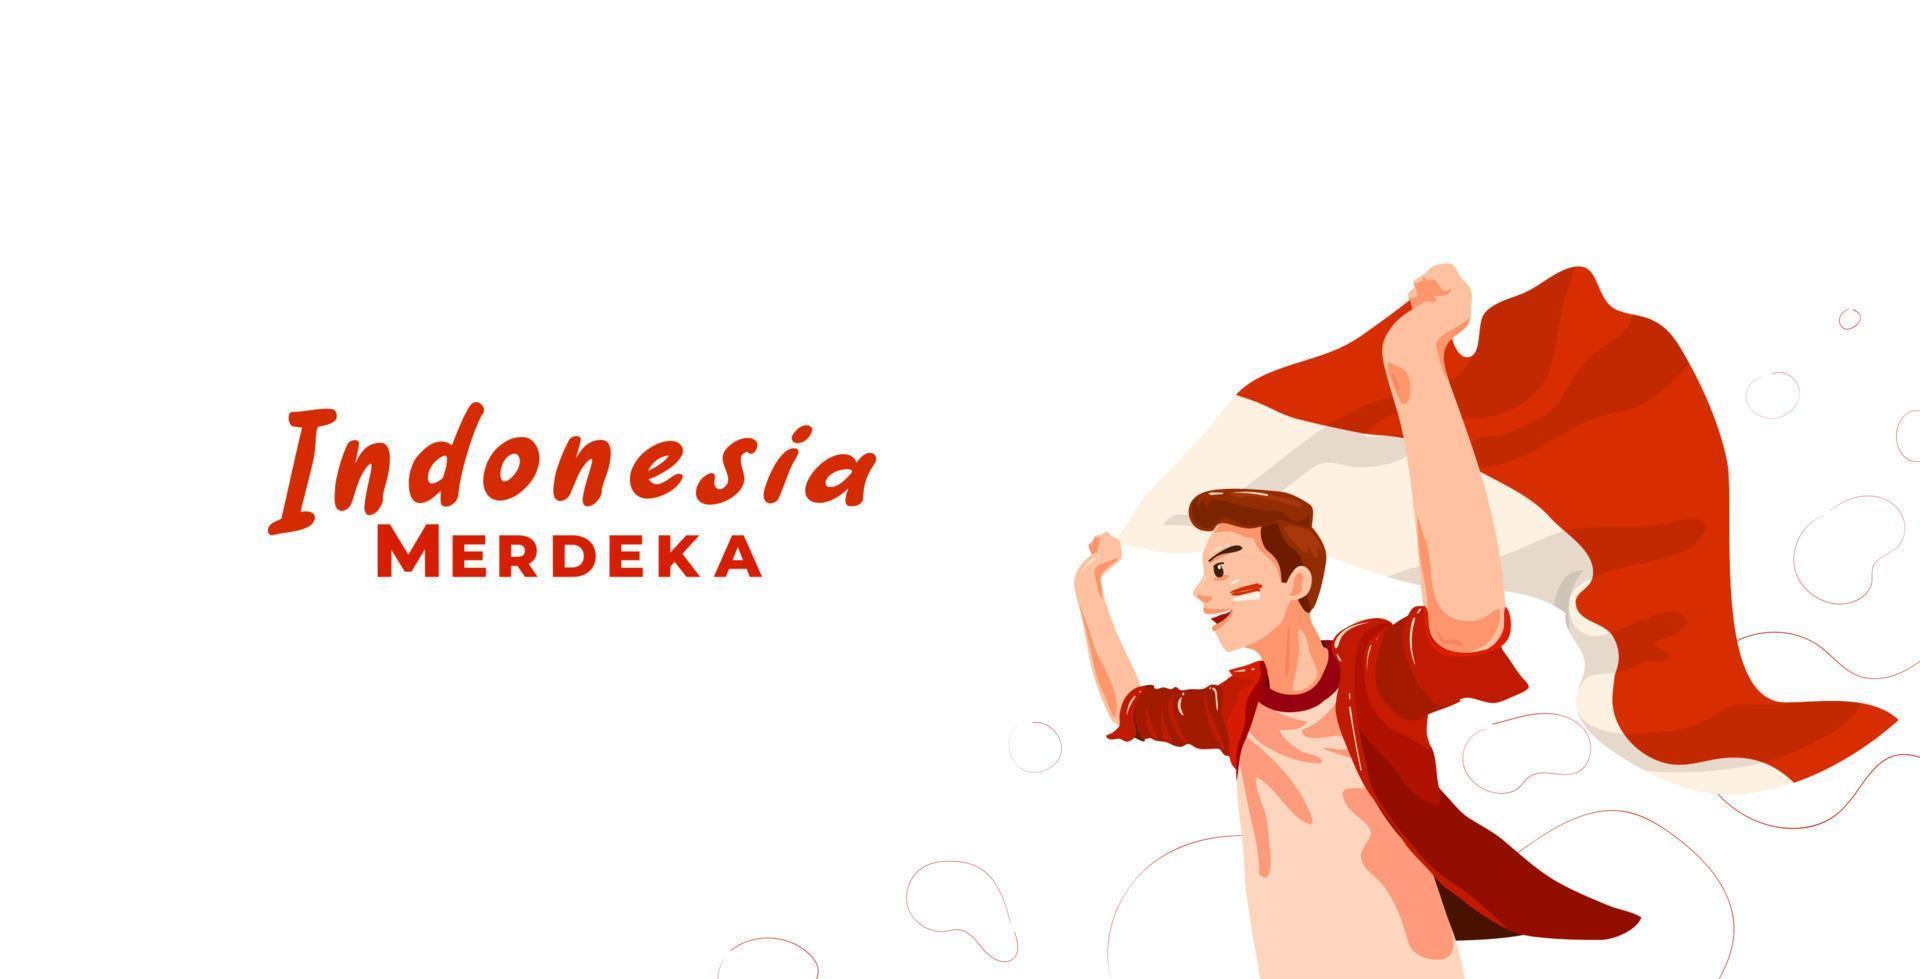 jovem indonésio comemorando o dia da independência da indonésia com bandeira. merdeka se traduz em independência ou liberdade ou independente vetor